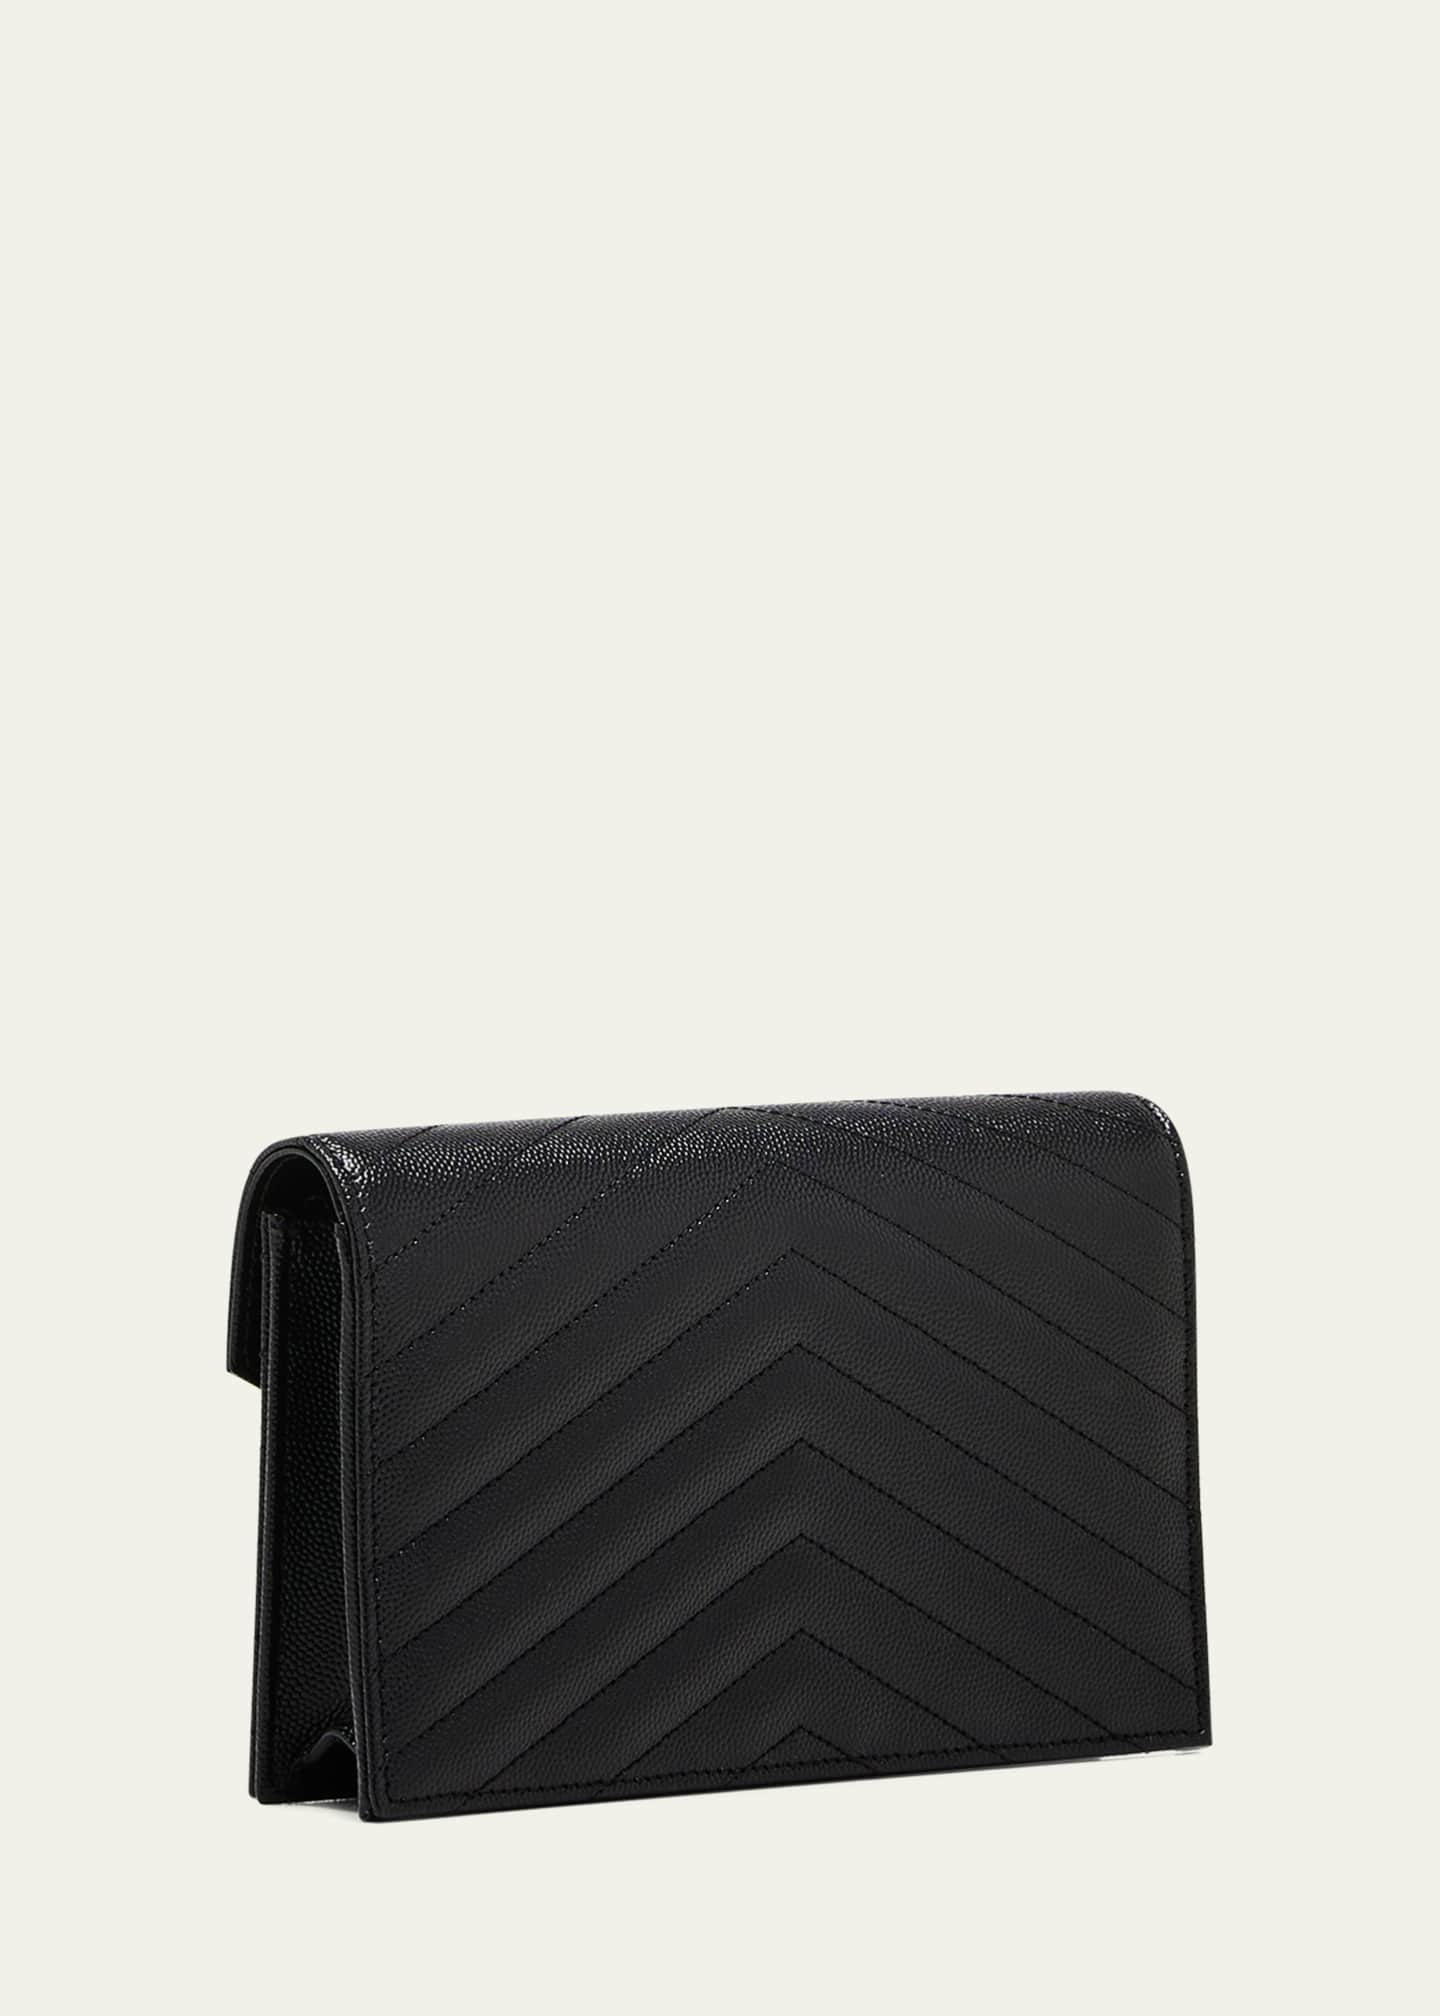 ysl envelope chain wallet black